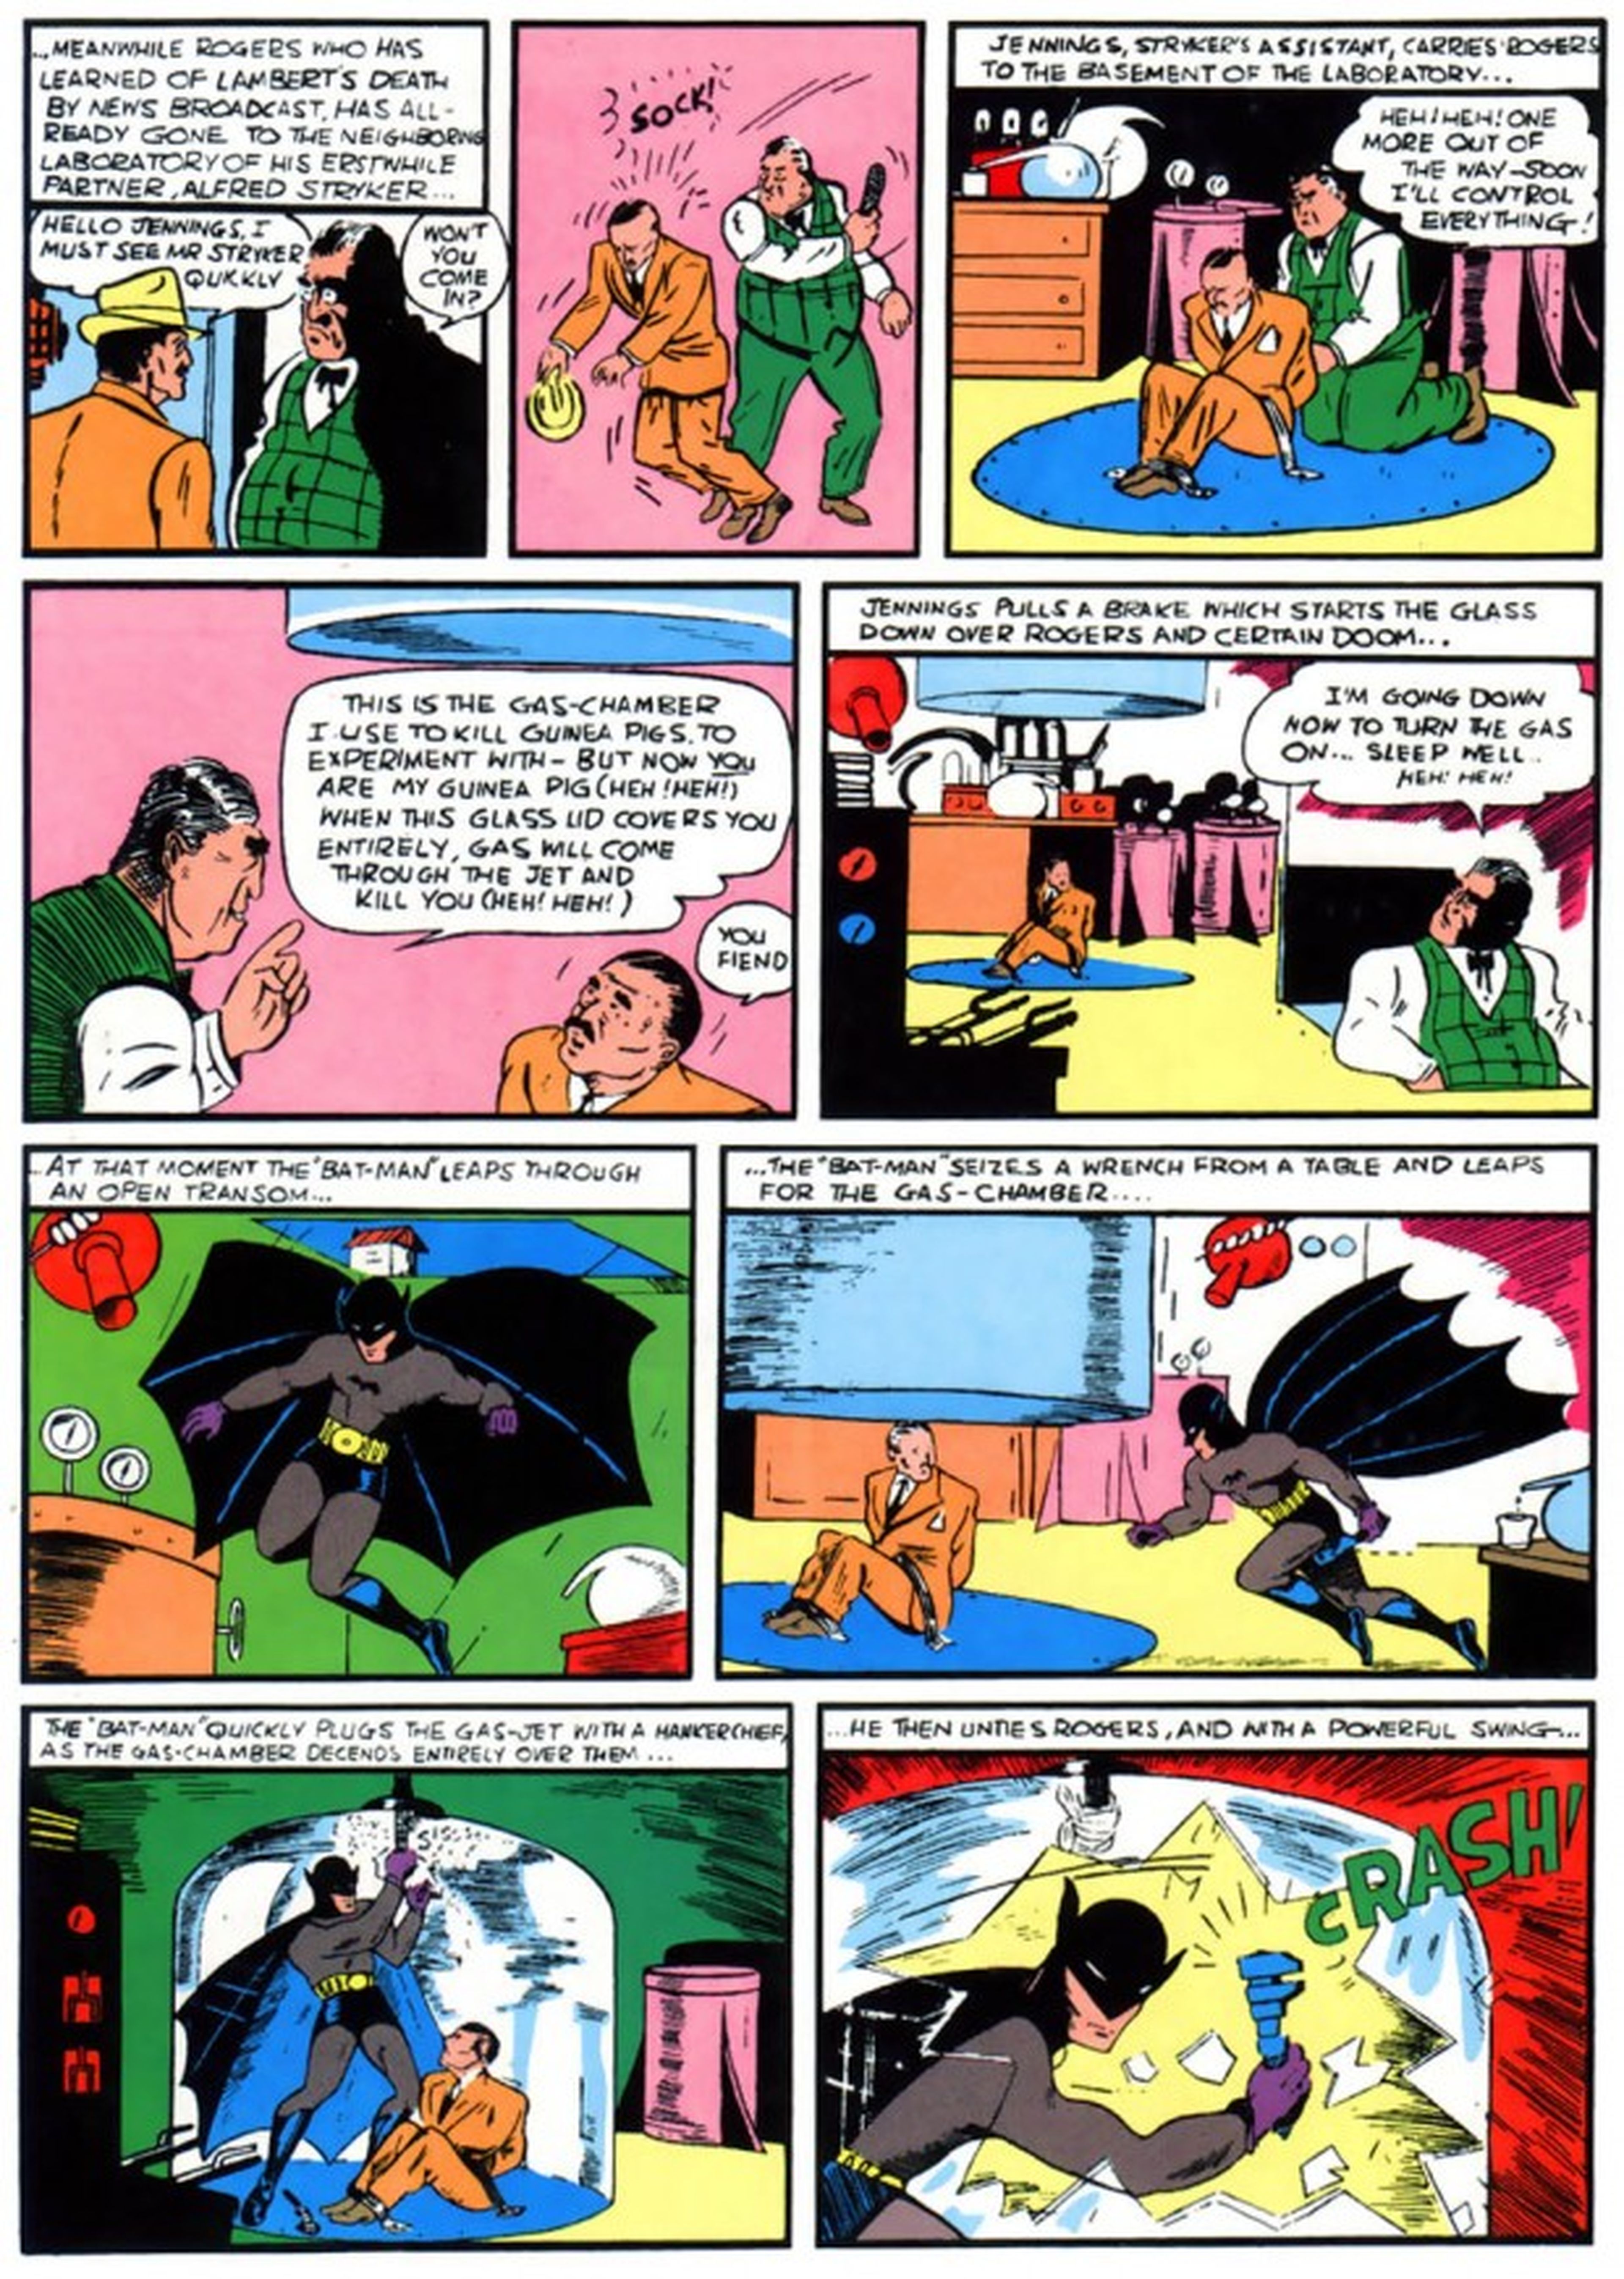 El primer cómic de Batman fue un "plagio" de La Sombra